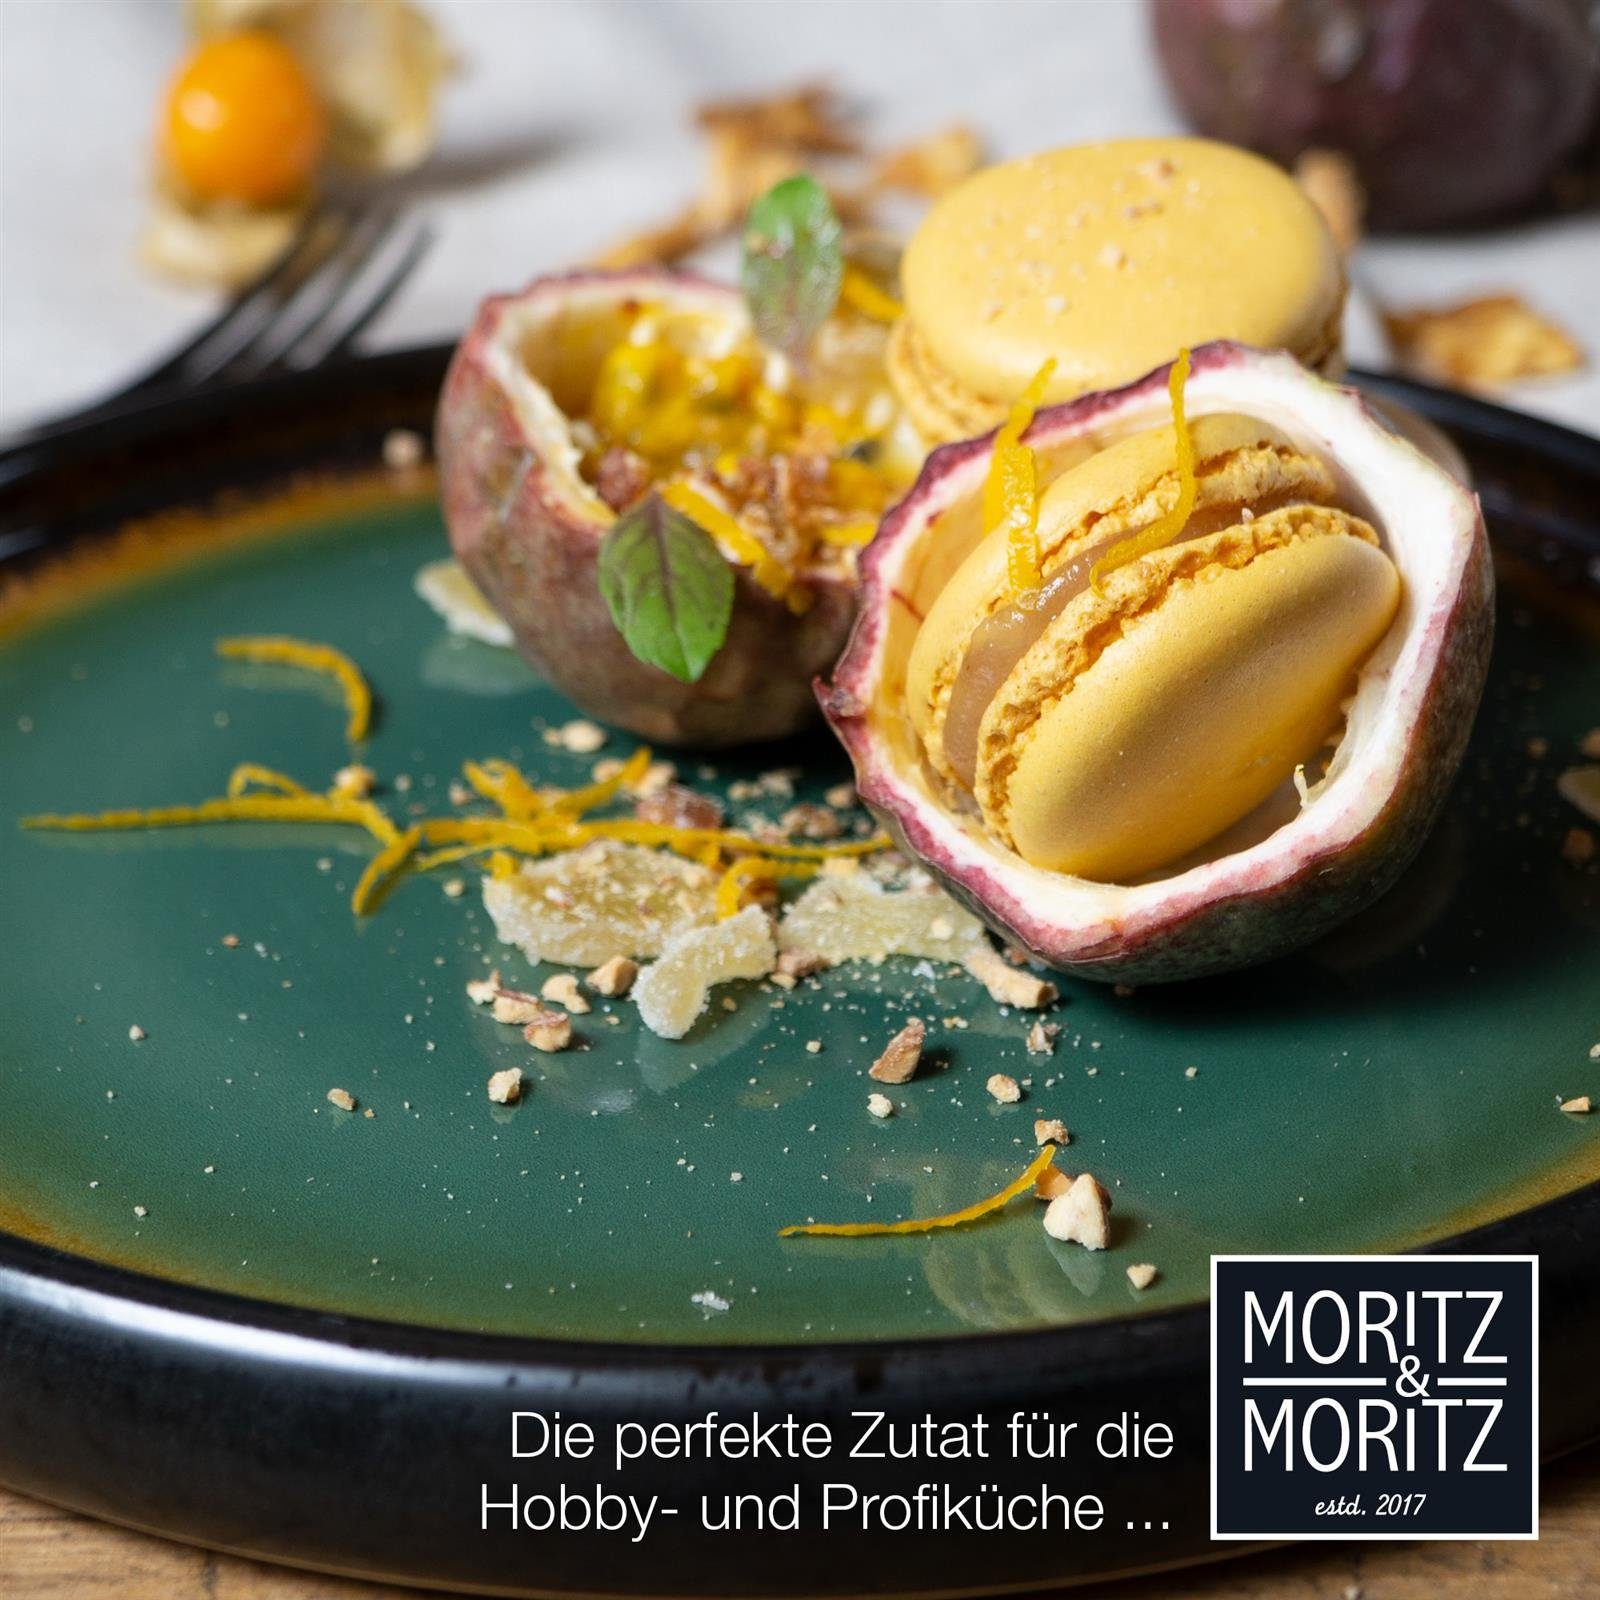 & St), Moritz Teller Dessert Moritz (4 Grün-Gelb, spülmaschinen-und mikrowellengeeignet Dessertteller